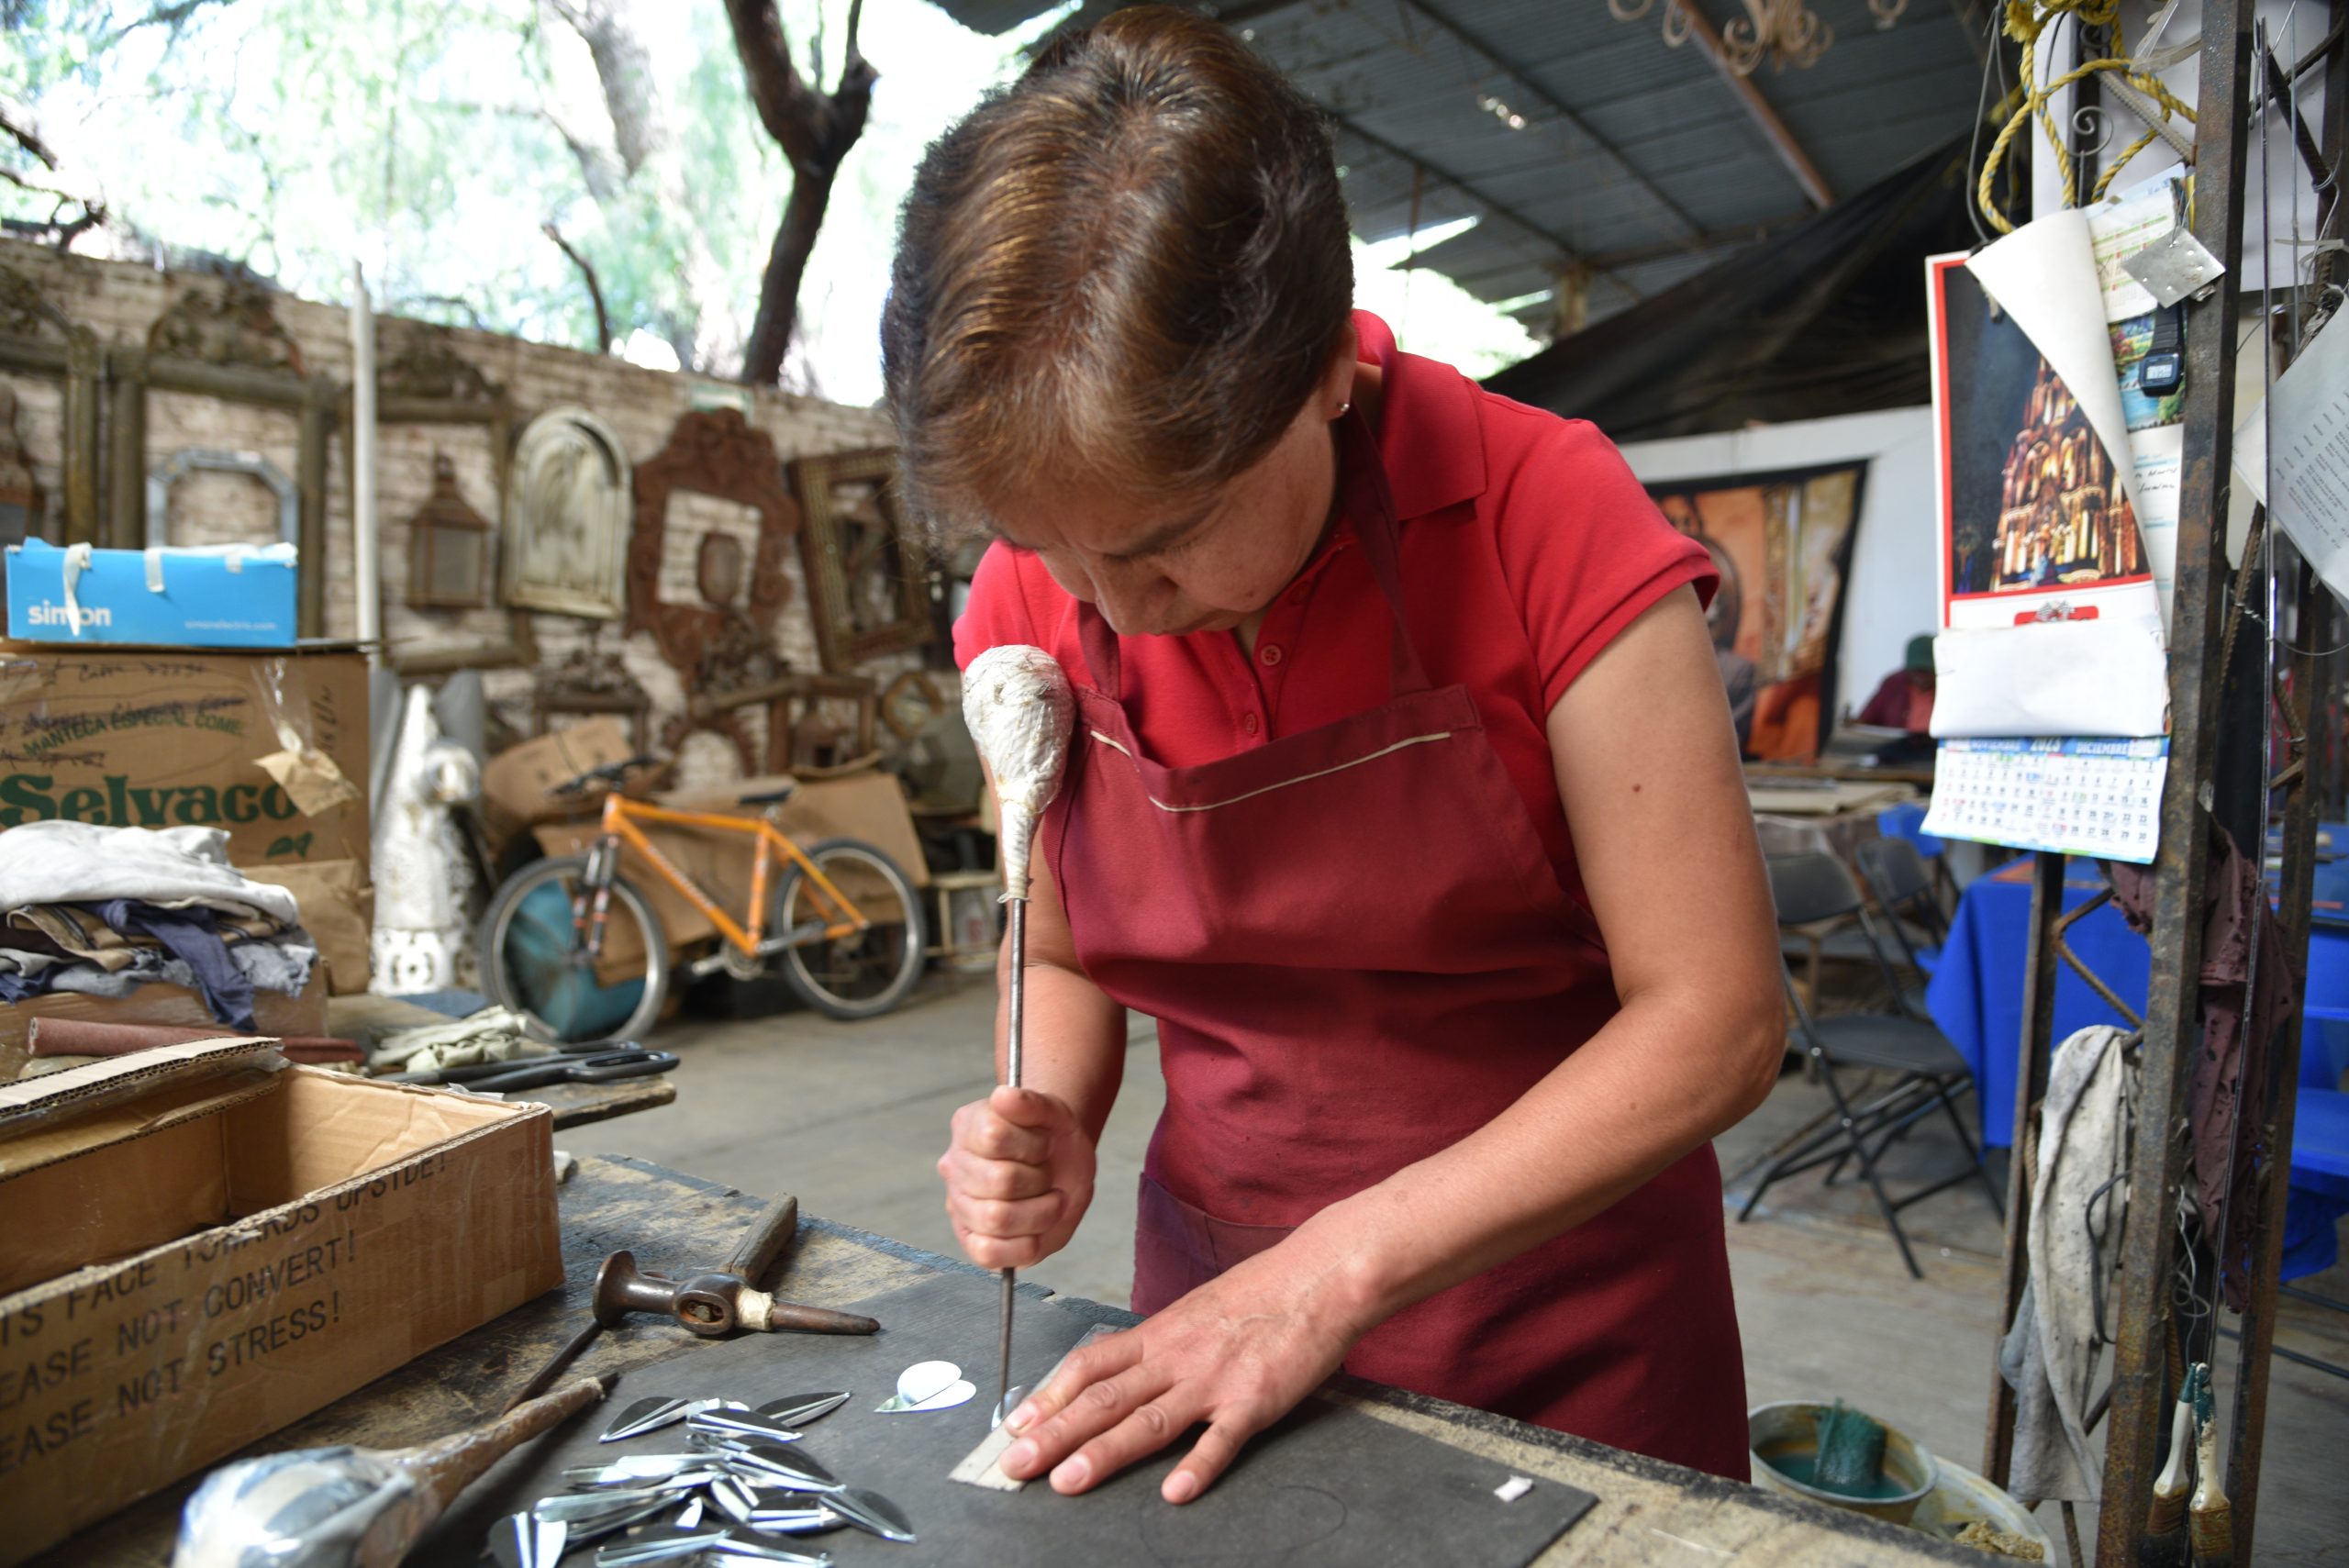 Implementa el IECA el programa Galilea para apoyar el trabajo de los artesanos en Guanajuato, a través de innovación y nuevos modelos de negocio